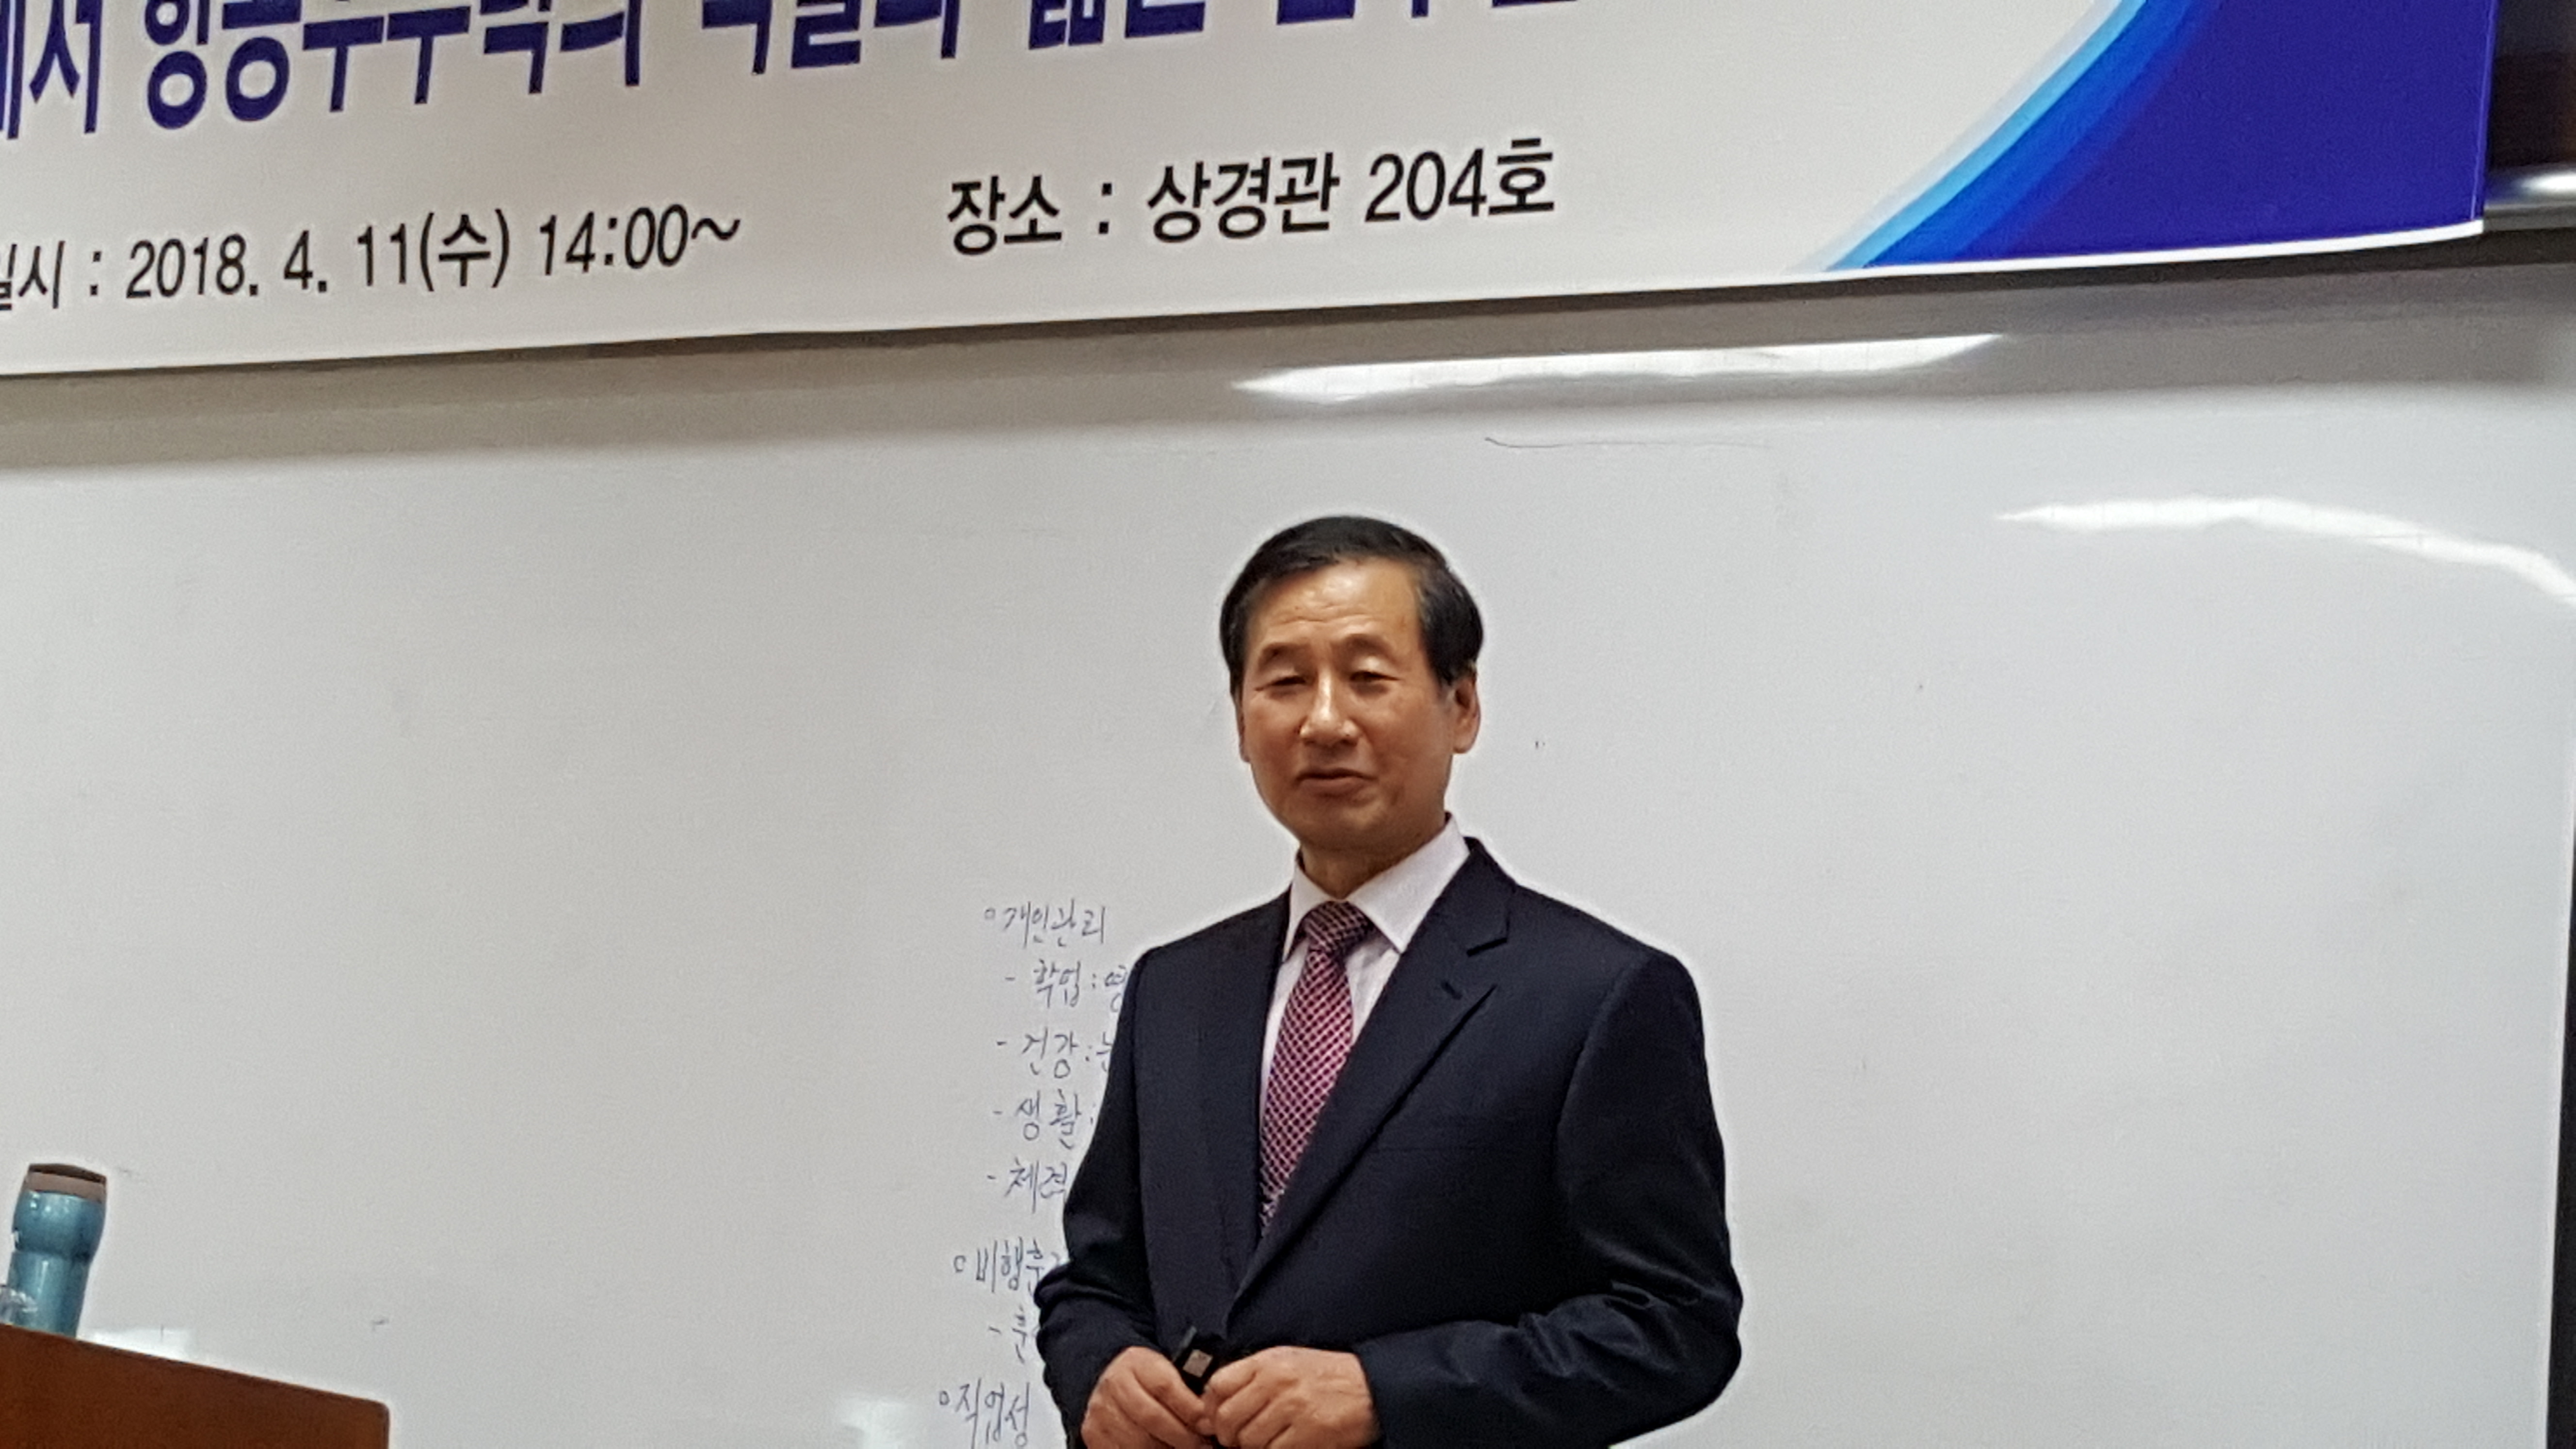 항공운항계열, 강구영 석좌교수 초청 특강 개회